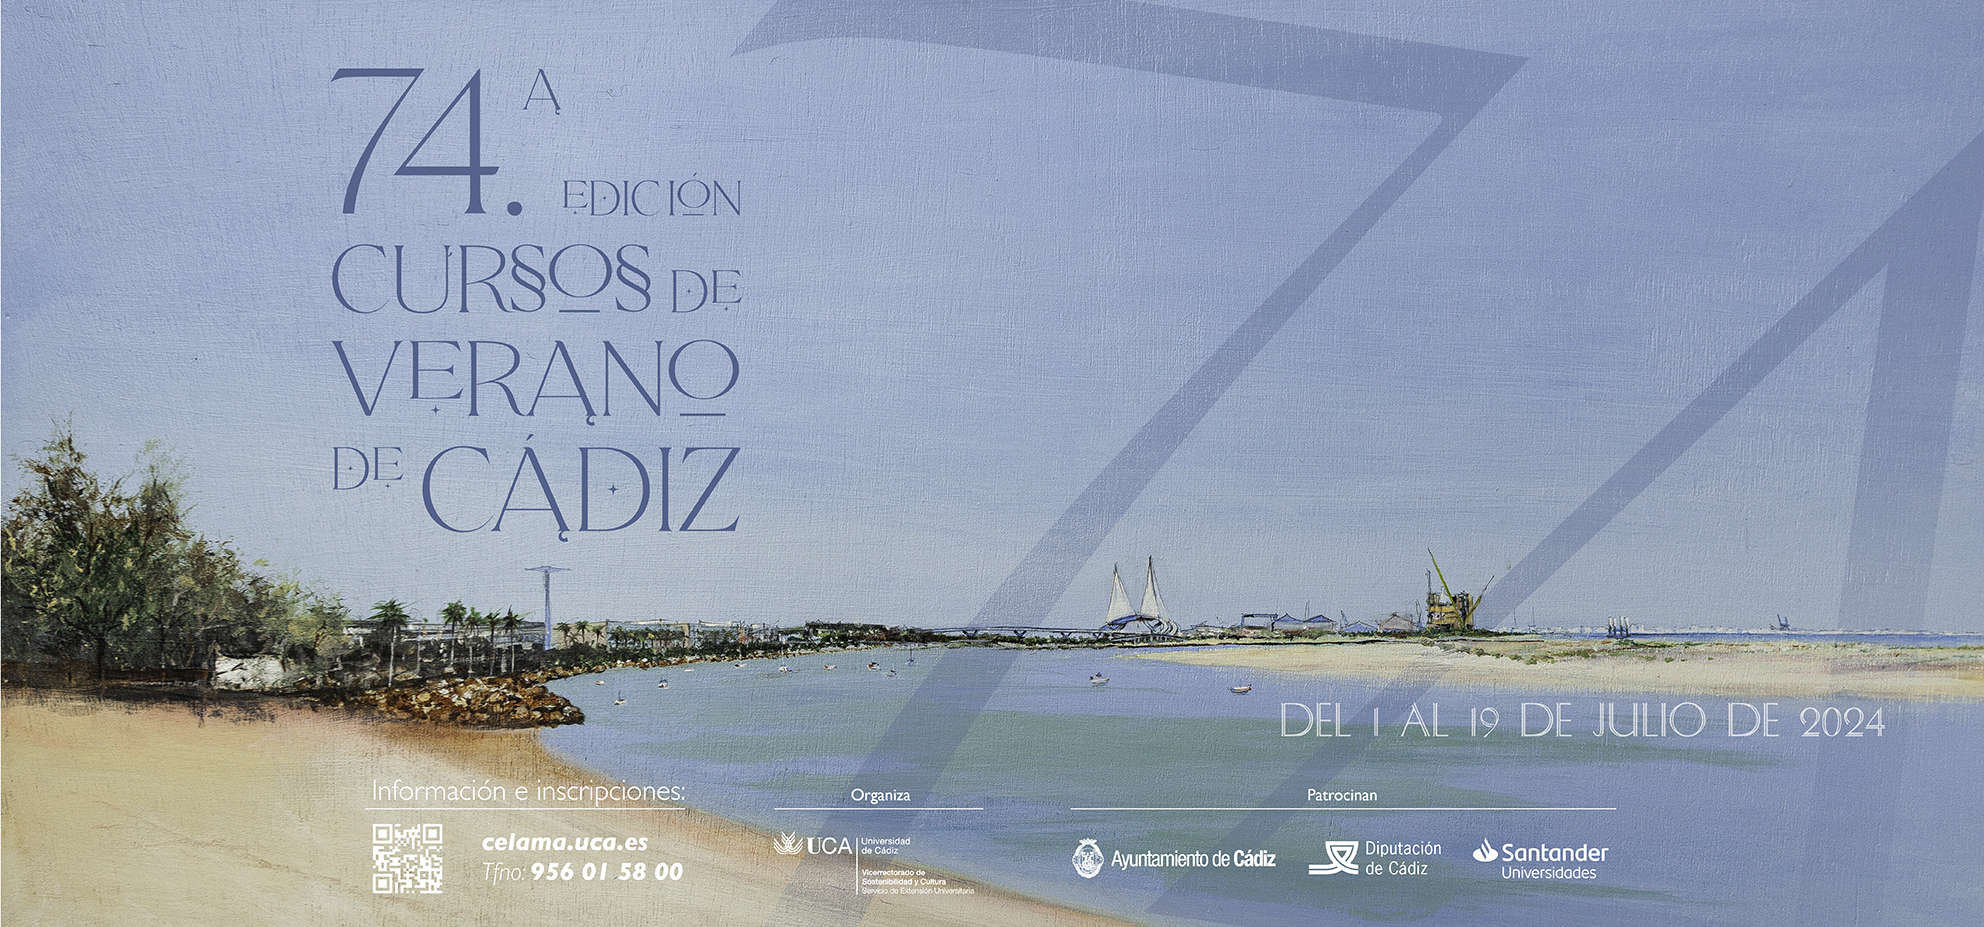 Se ha escrito un crimen: Periodismo y derecho en la sociedad de la información en la 74ª edición de los Cursos de Verano de Cádiz